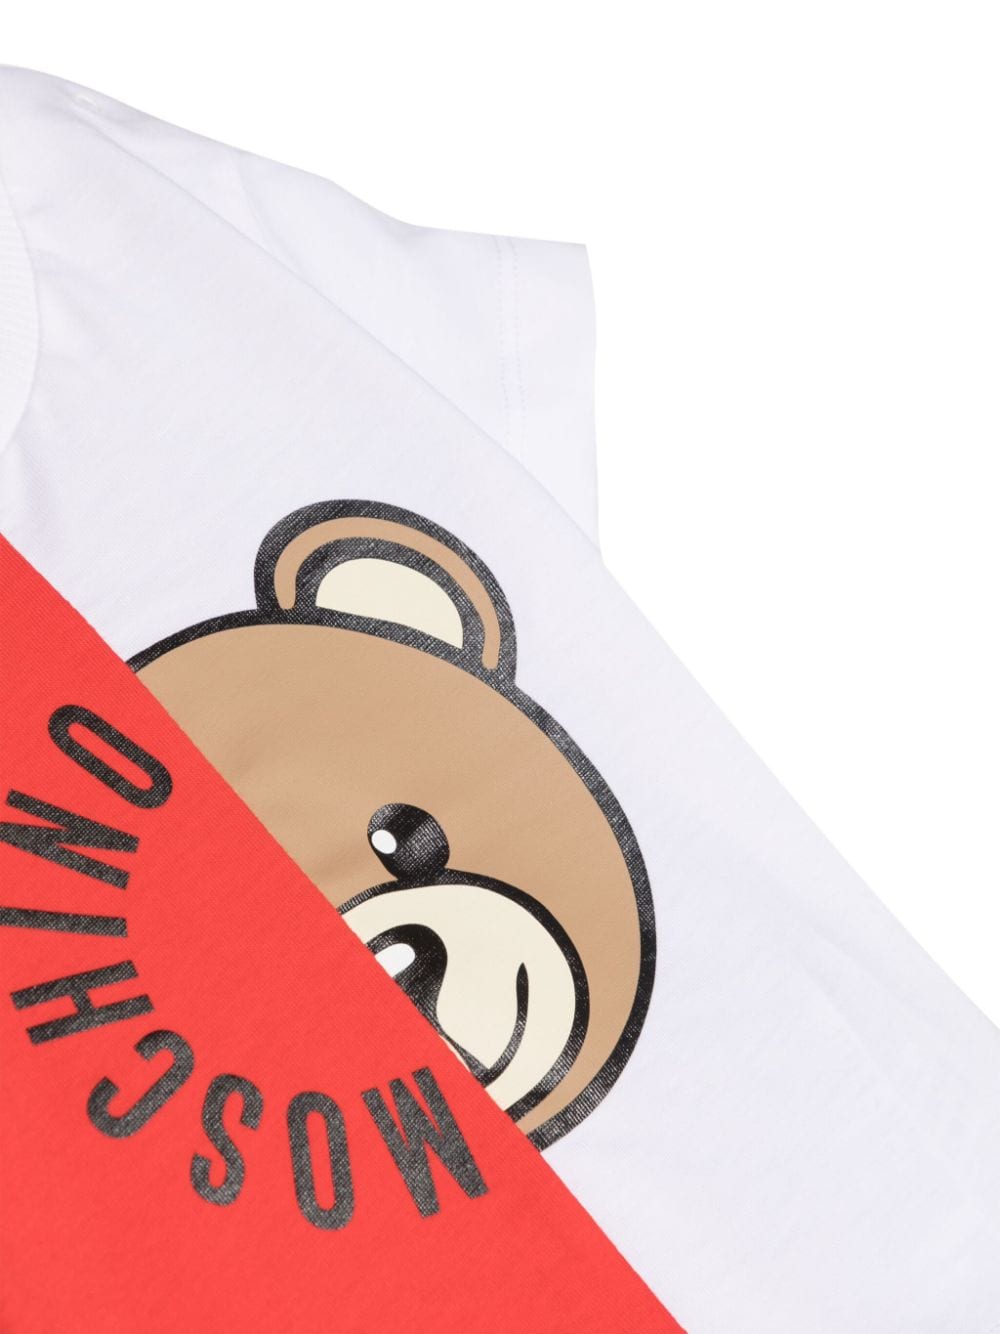 T-shirt bianca e rossa per neonato con logo